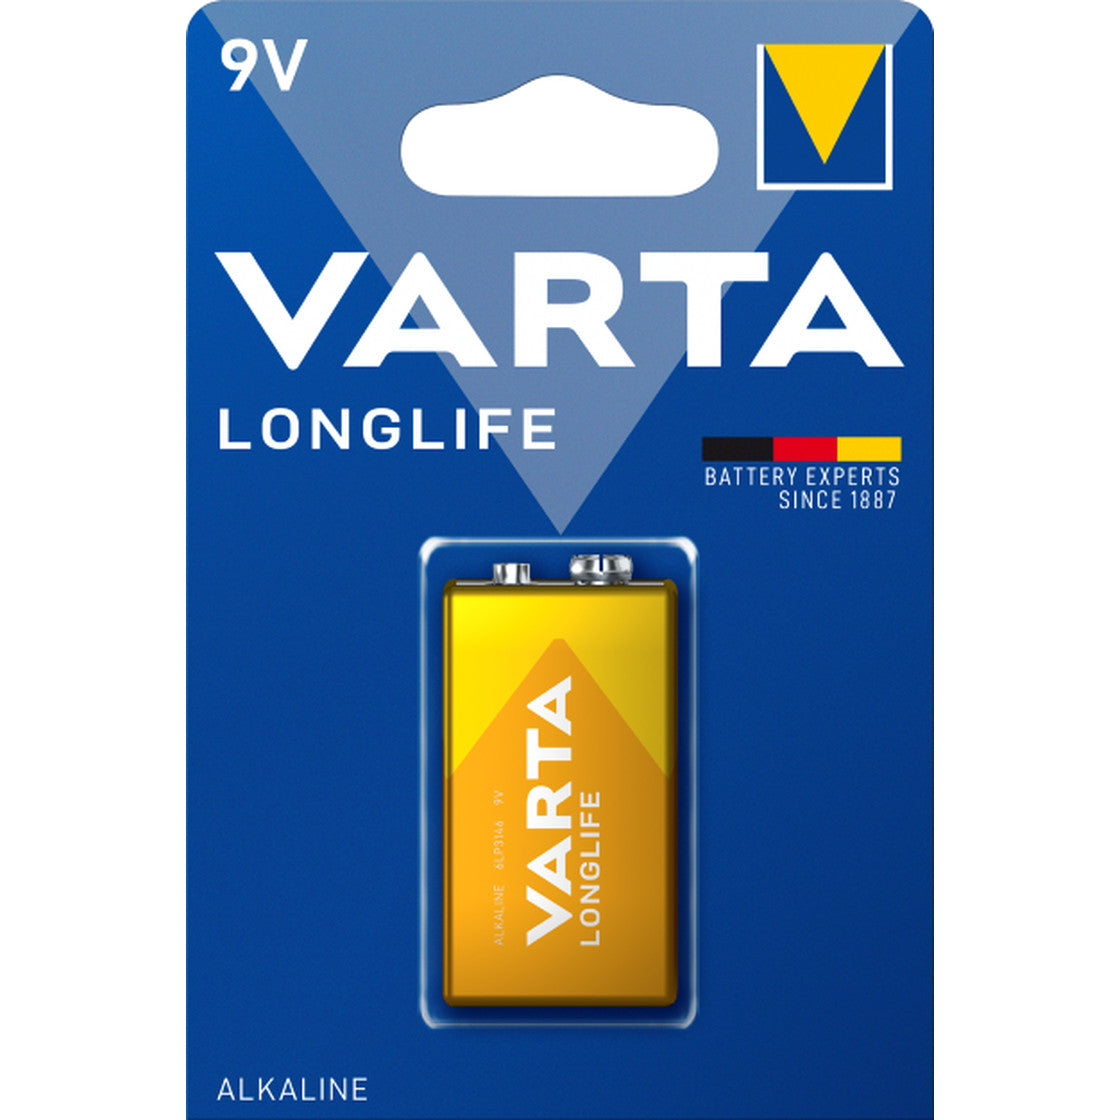 Varta Longlife 4122 - 9V X1